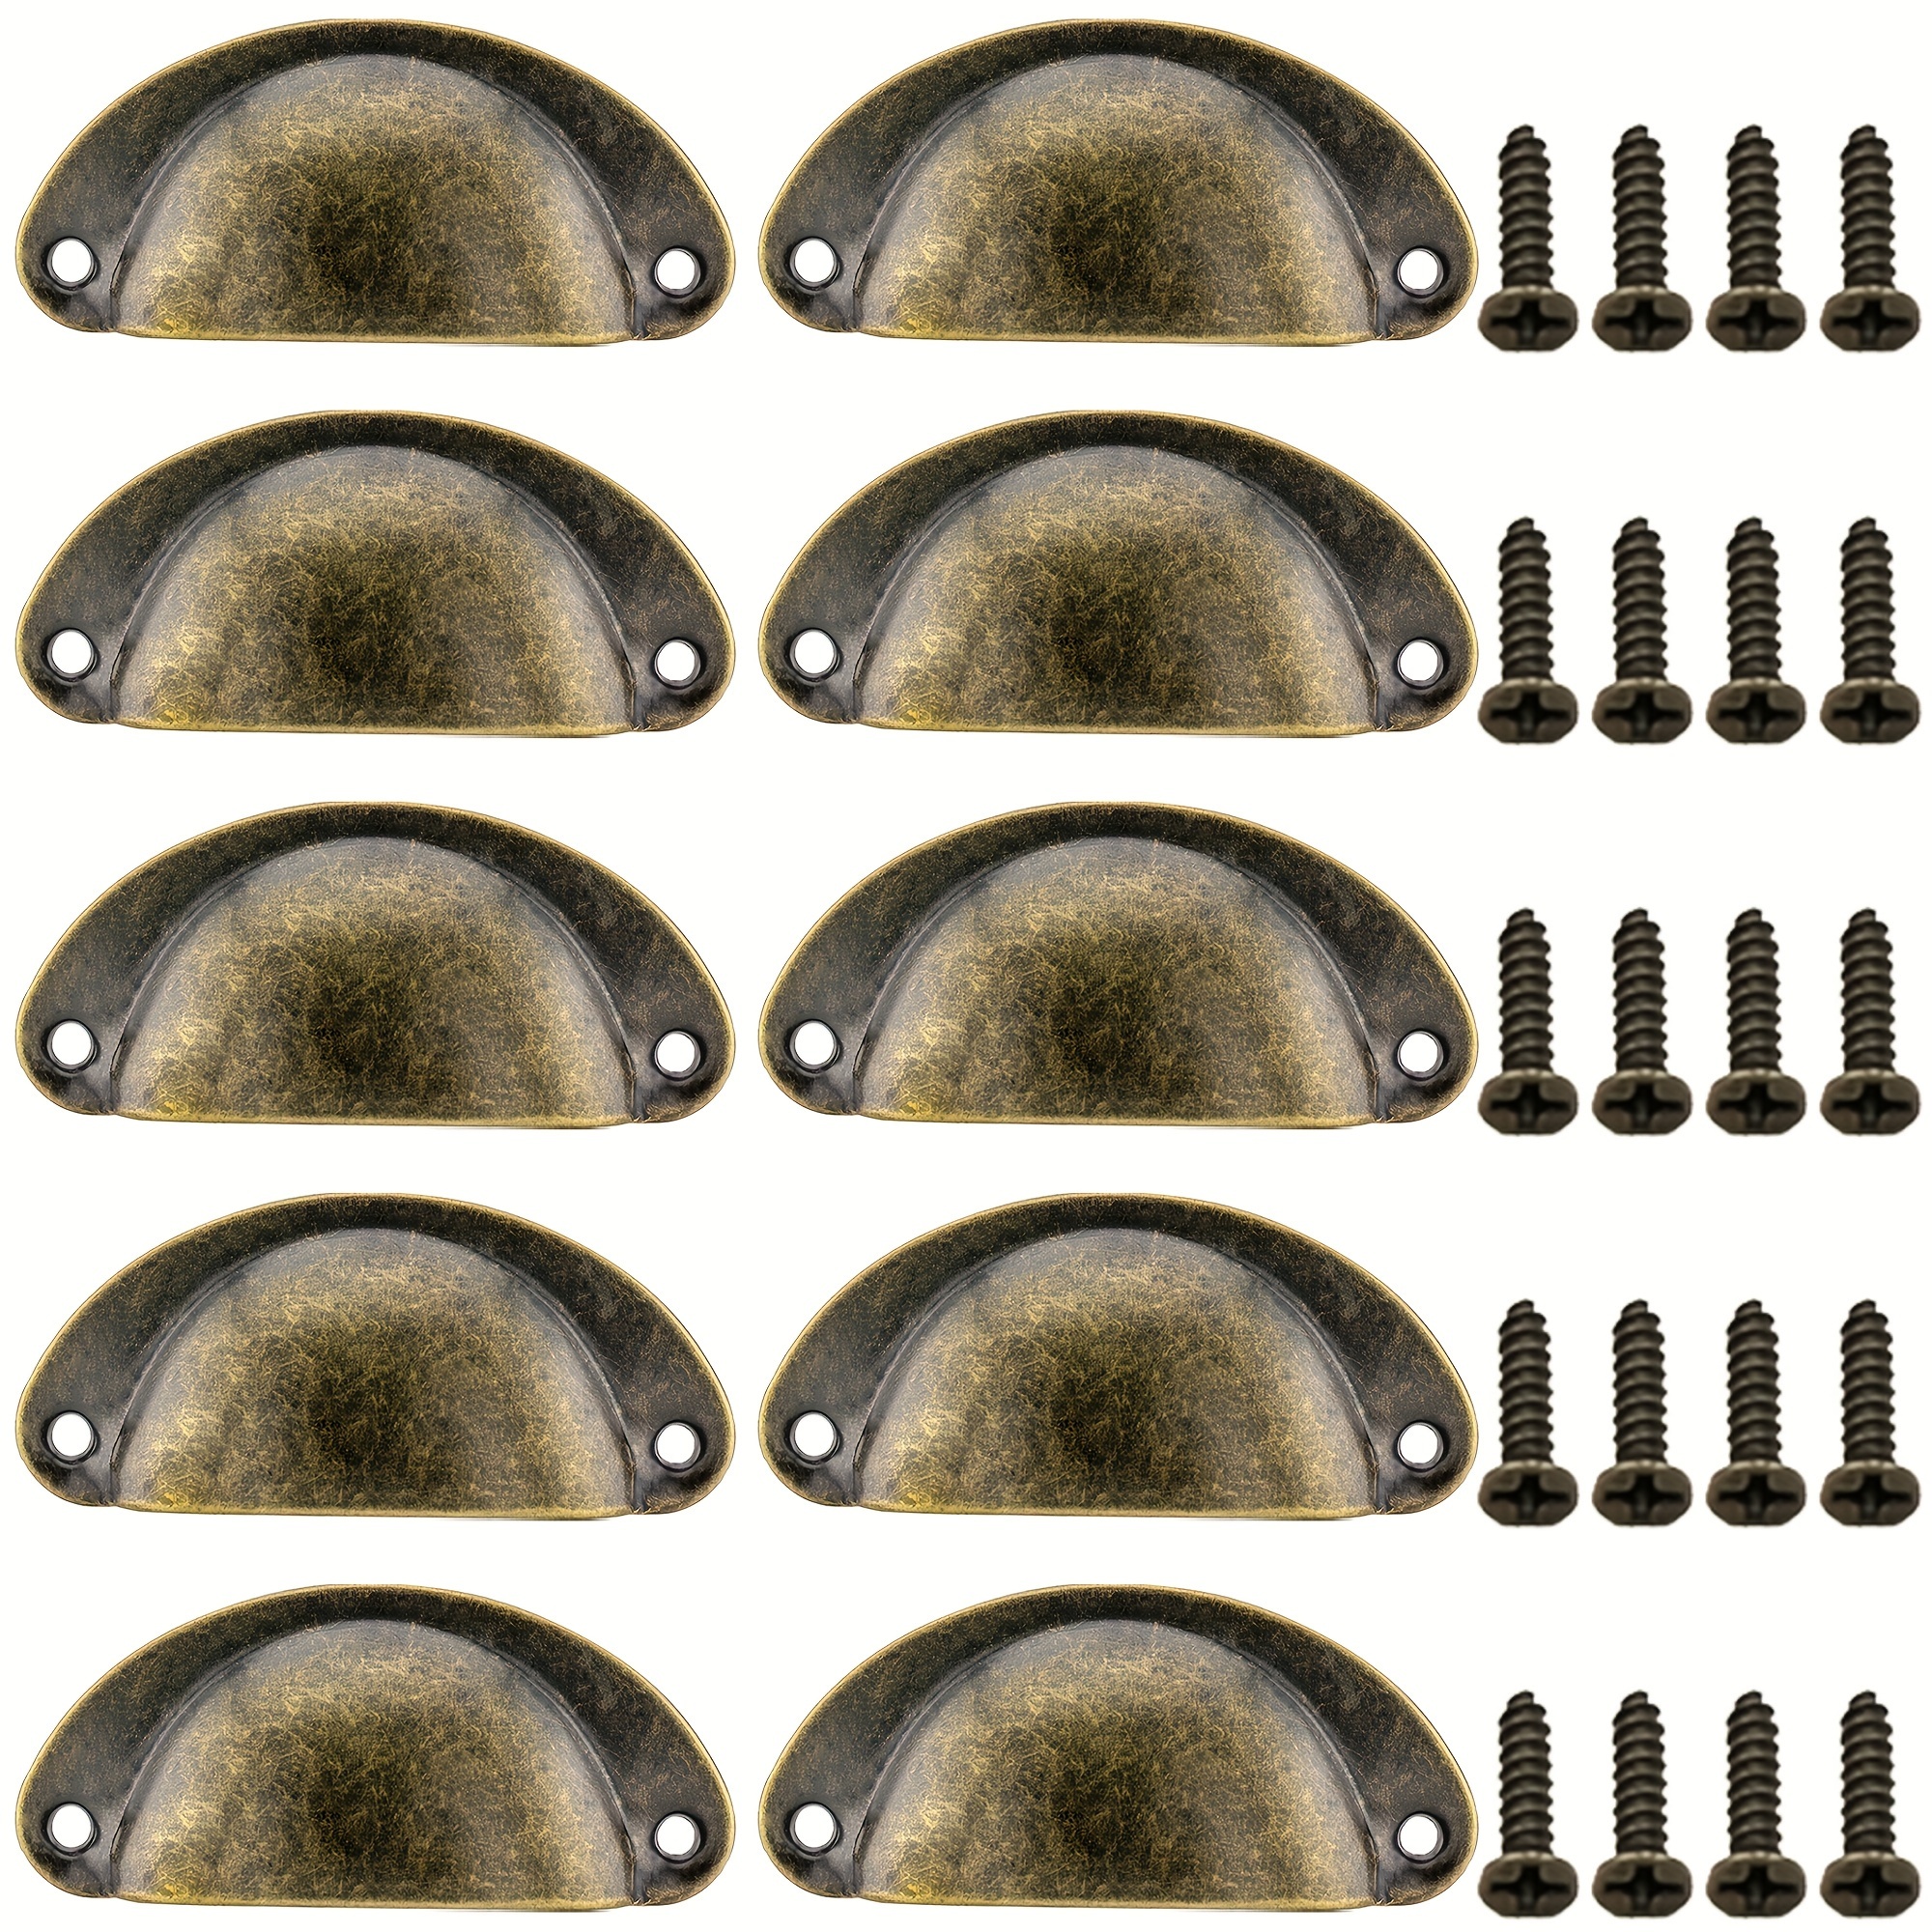 6 tiradores vintage de 3 pulgadas, tiradores de cajón de bronce antiguo  (espacio de agujeros de 3 pulgadas, 4 pulgadas de longitud total)